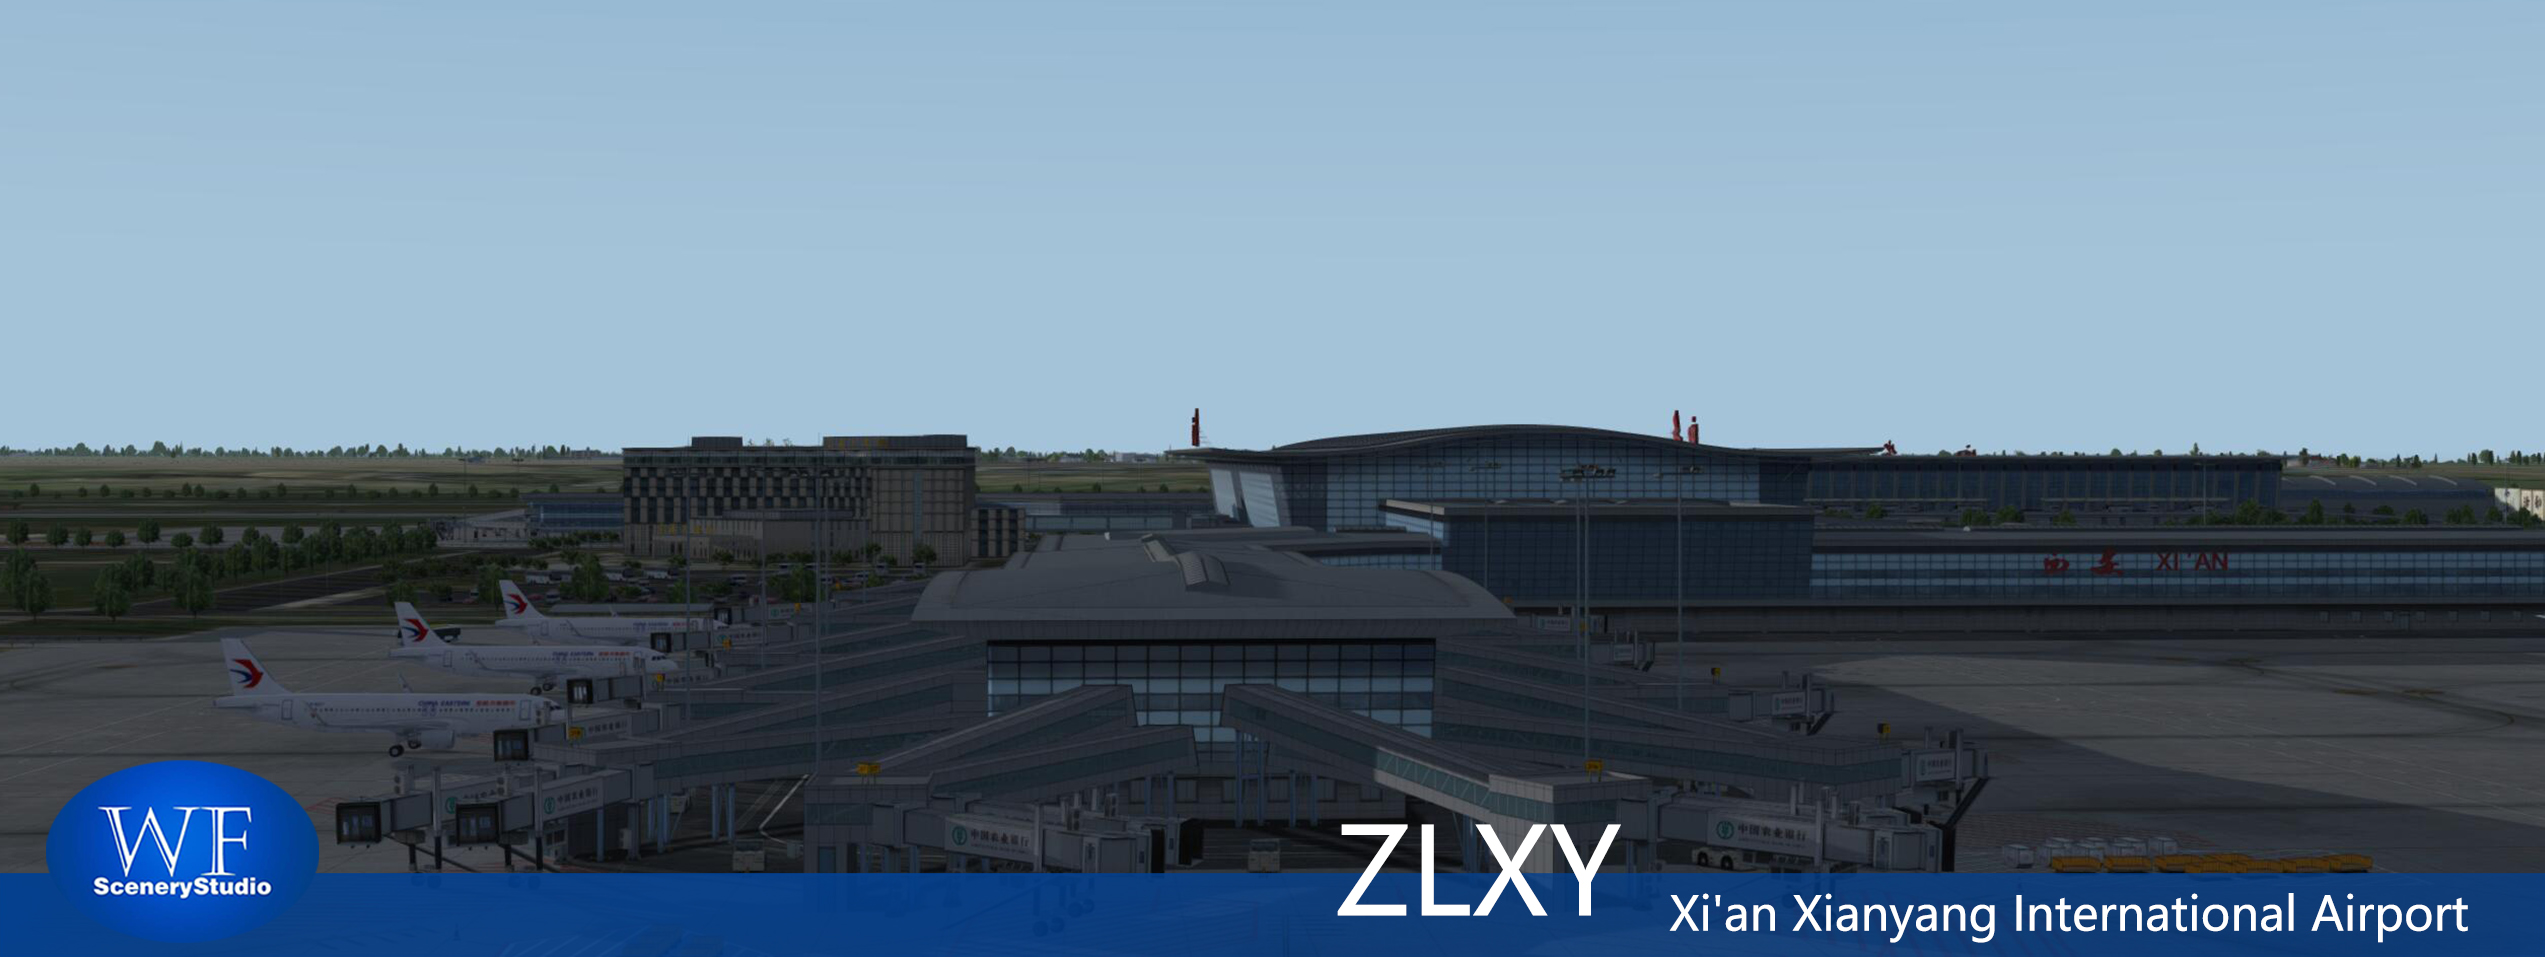 西安咸阳国际机场FSX和P3DV3 版本发布-1279 